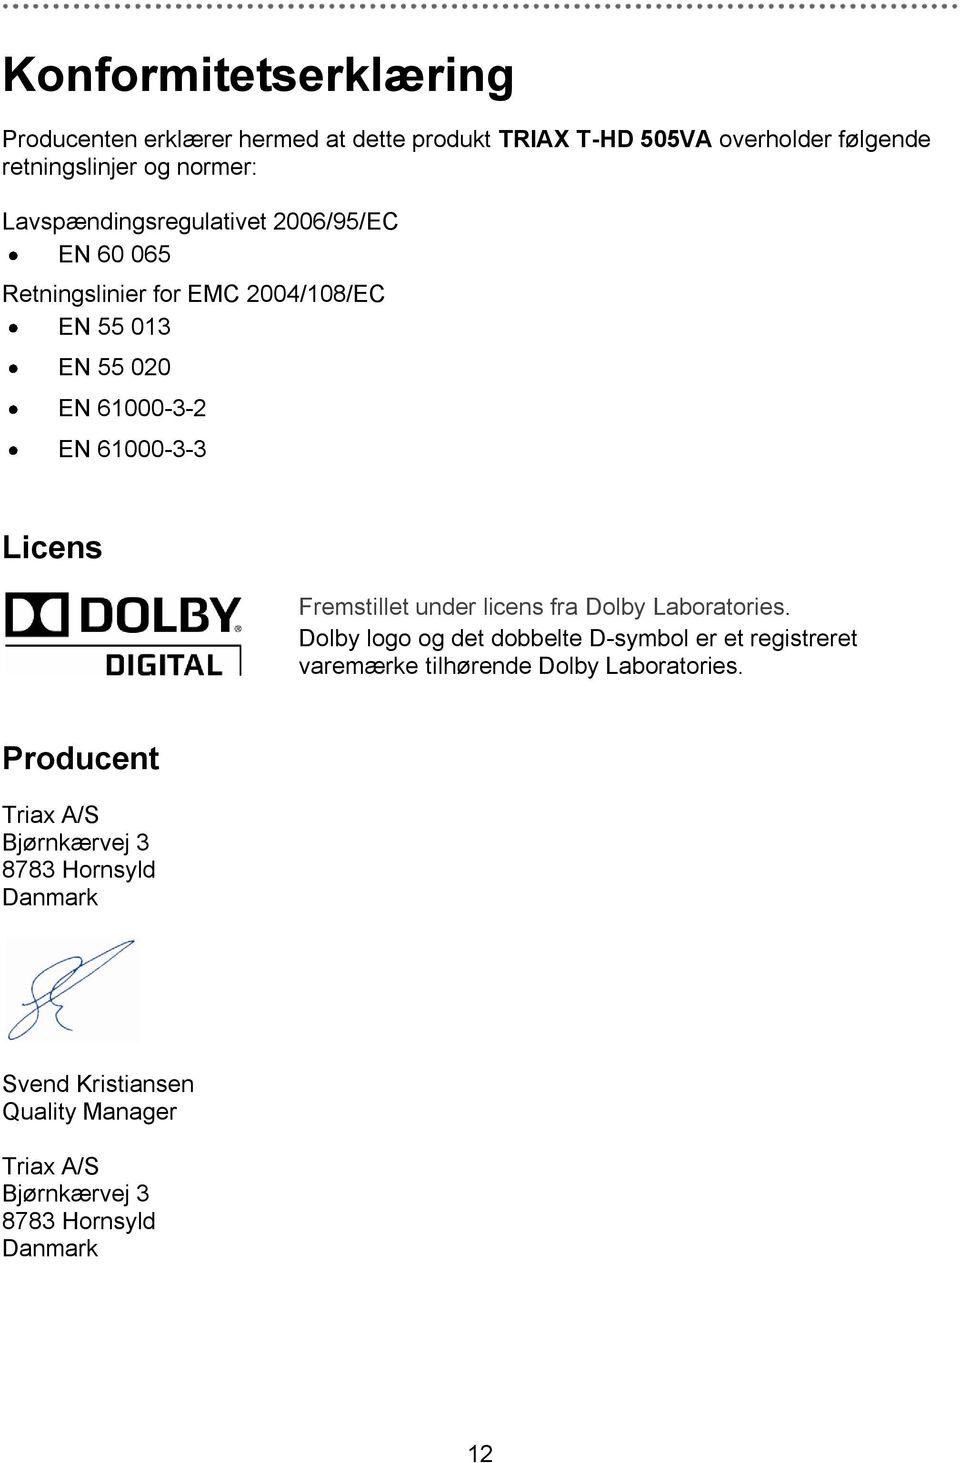 Fremstillet under licens fra Dolby Laboratories.